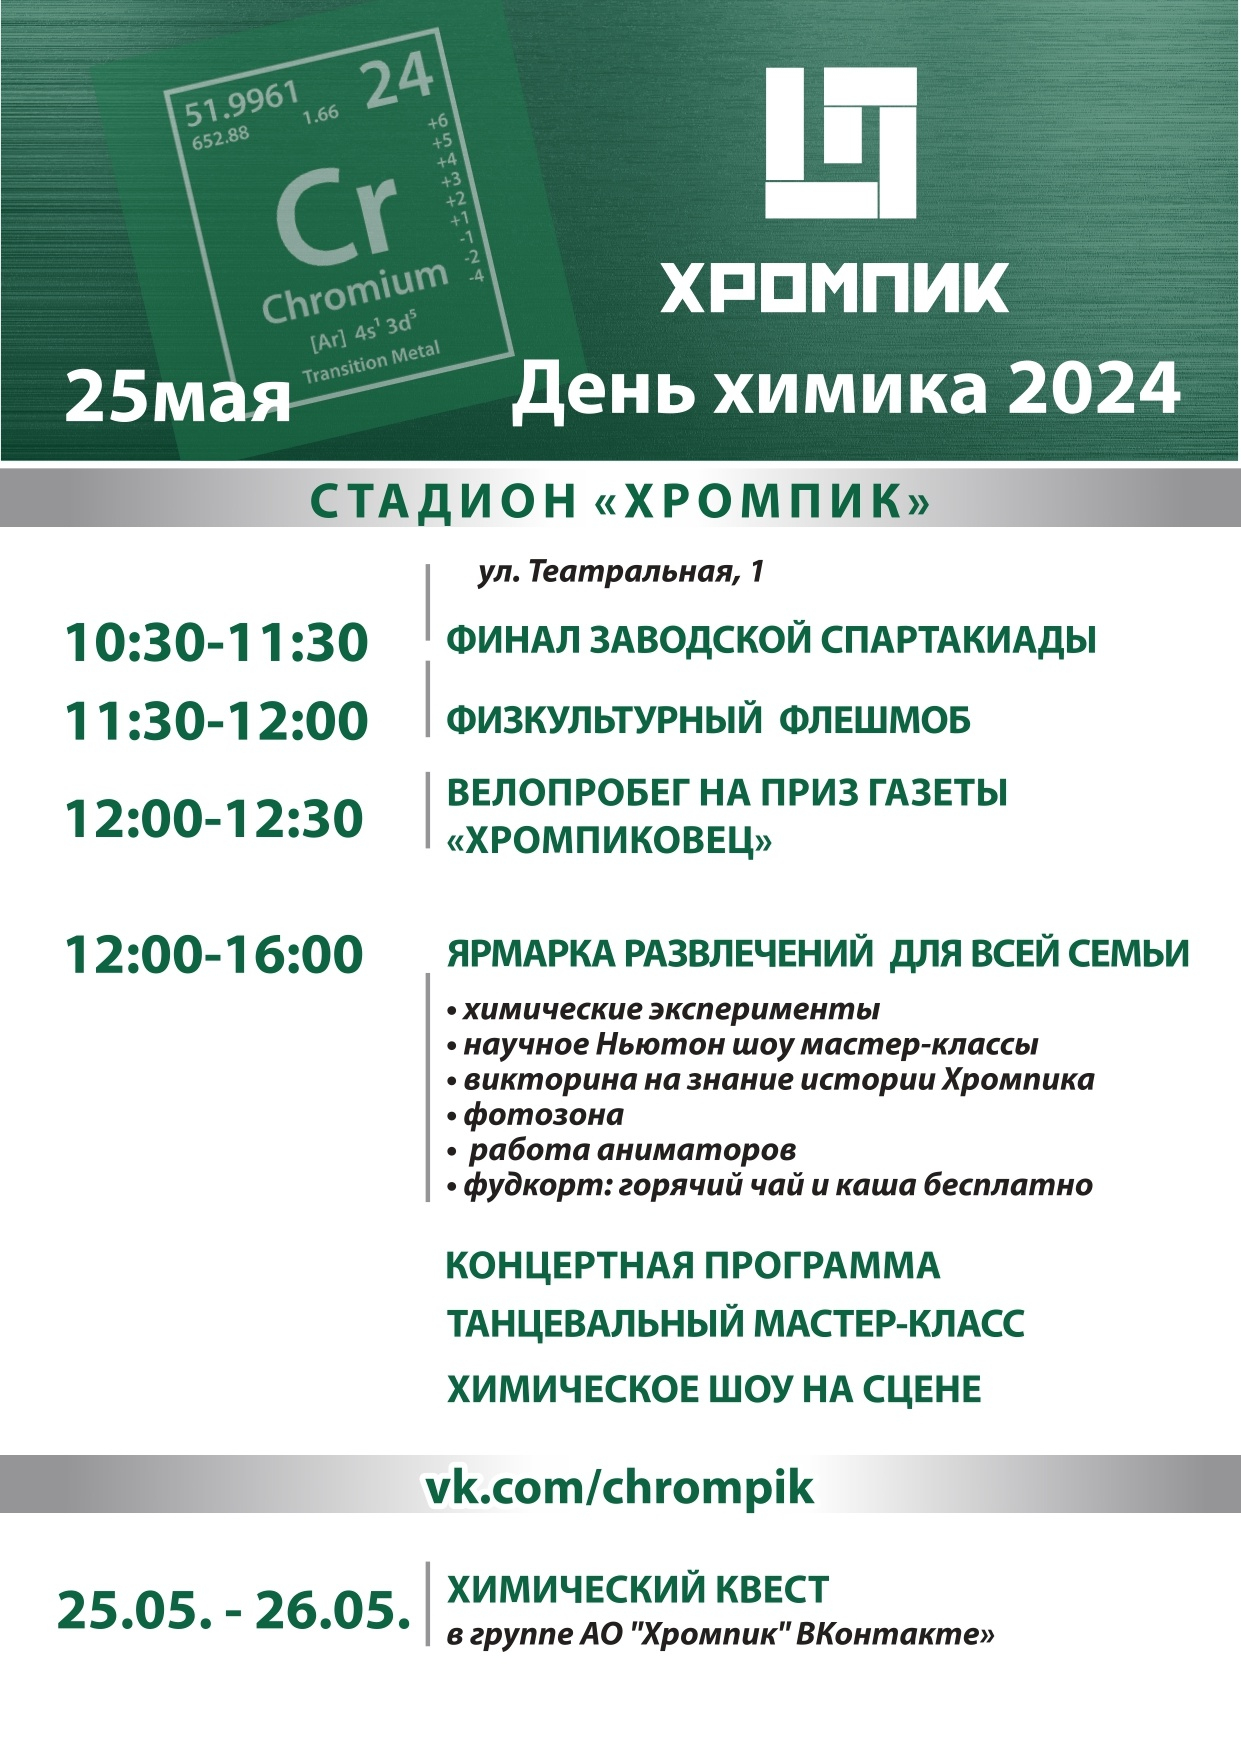 25 мая в Первоуральске на стадионе «Хромпик» пройдёт День химика.Программа